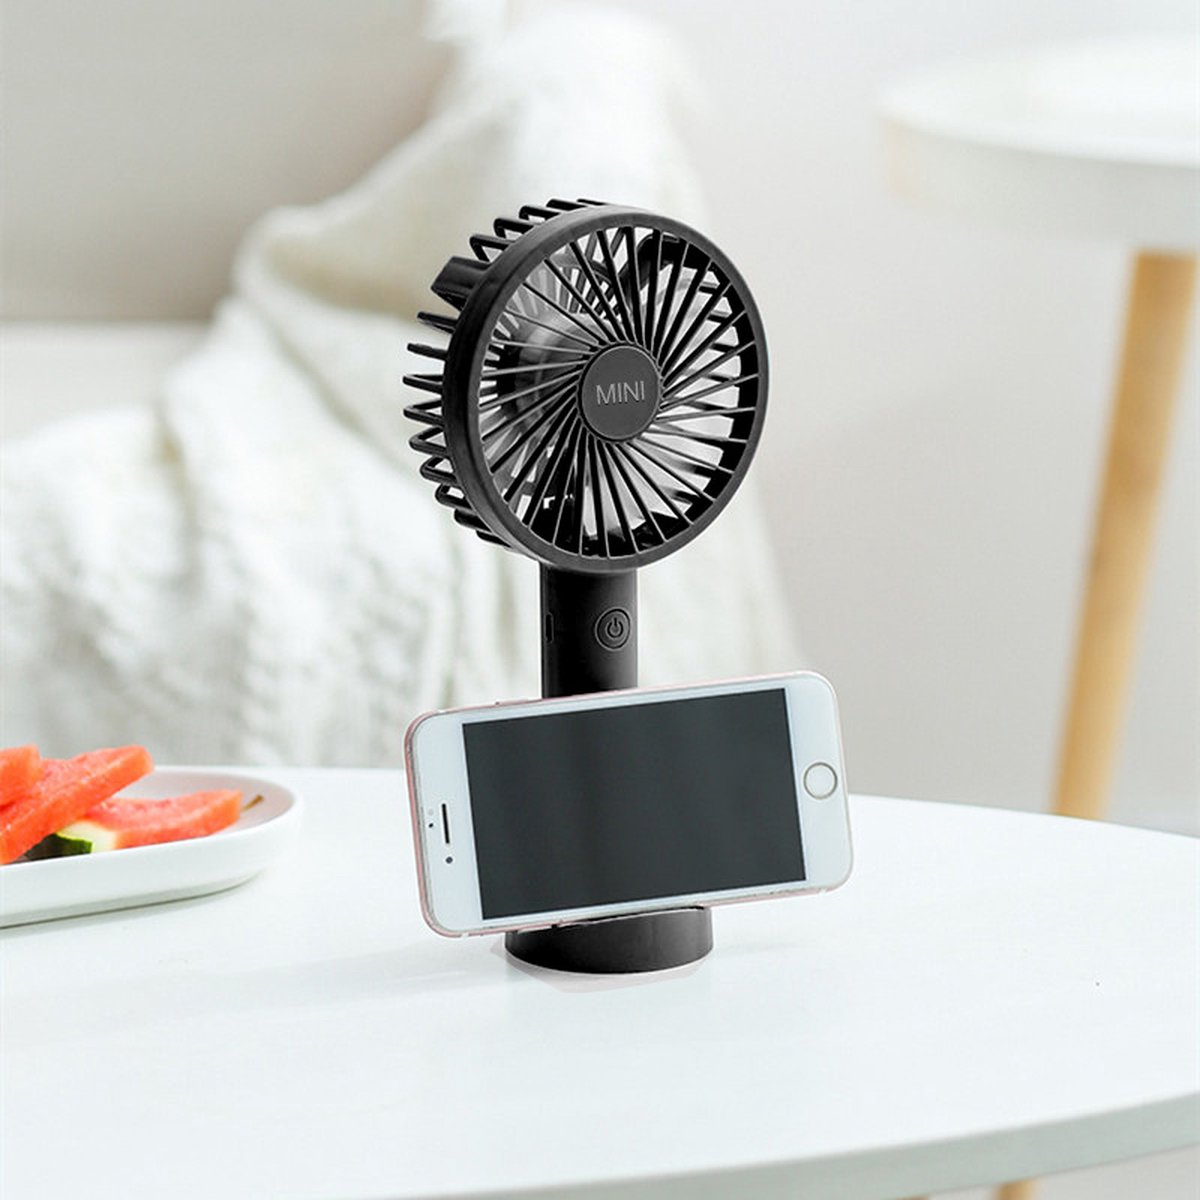 Draagbare Ventilator - oplaadbaar met USB - kan mobiel op voet plaatsen - perfect voor op op reis, buiten met warm weer - zwart